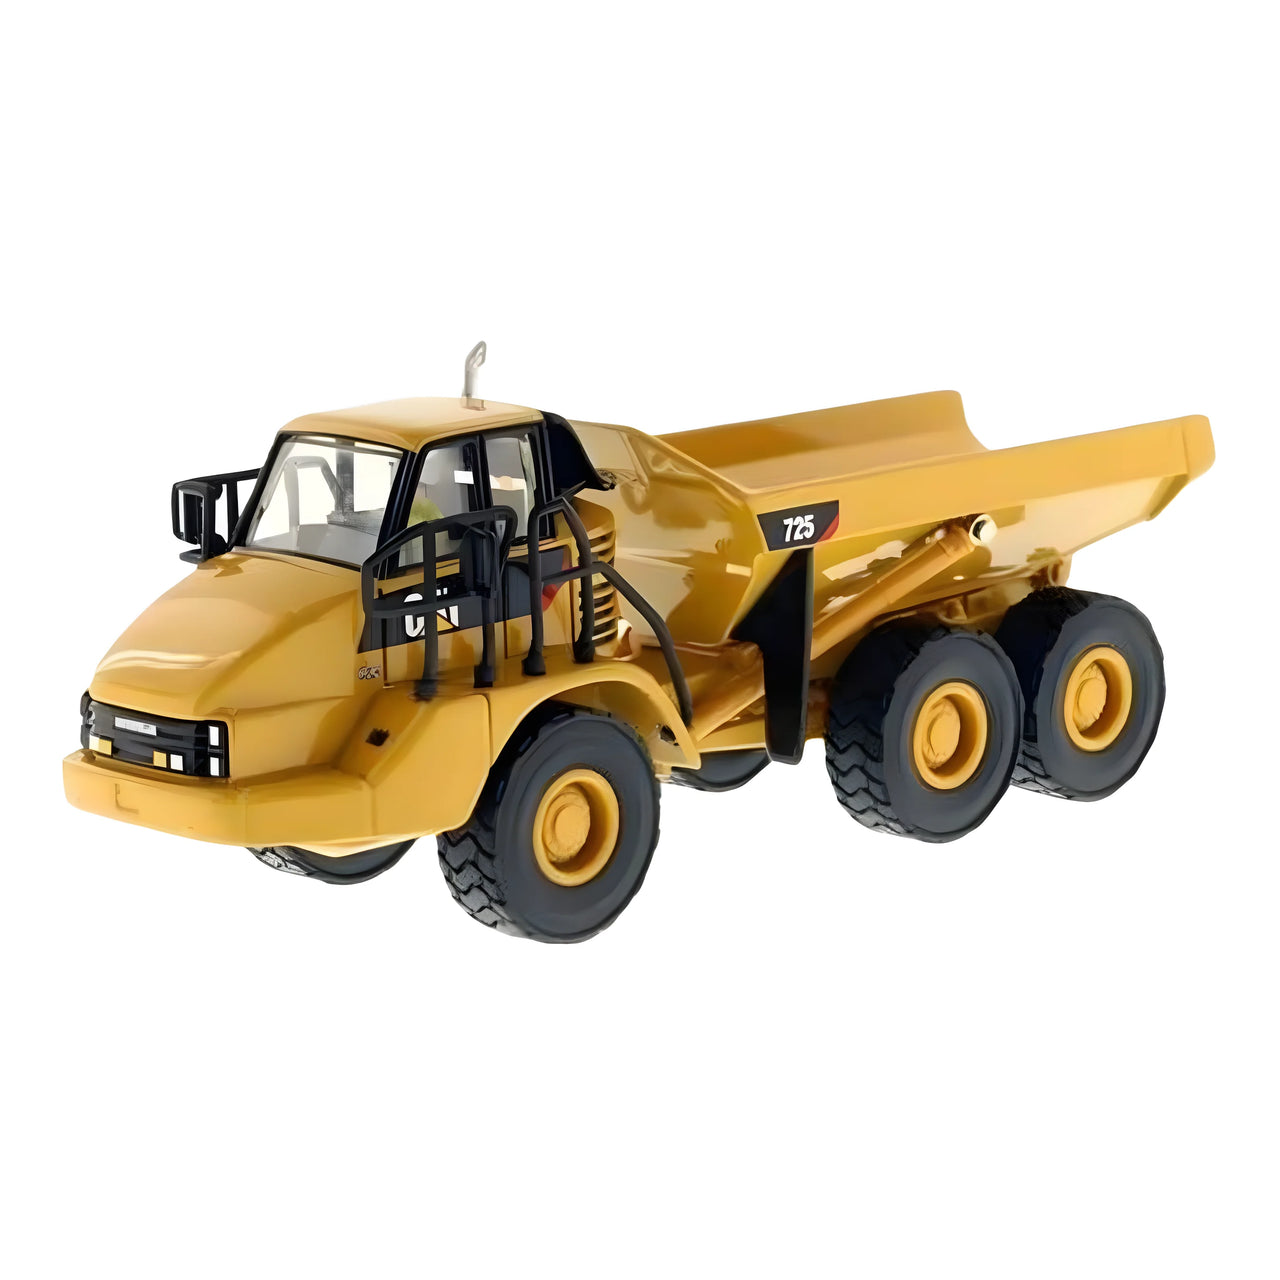 85073C Articulated Truck Caterpillar 725 Scale 1:50